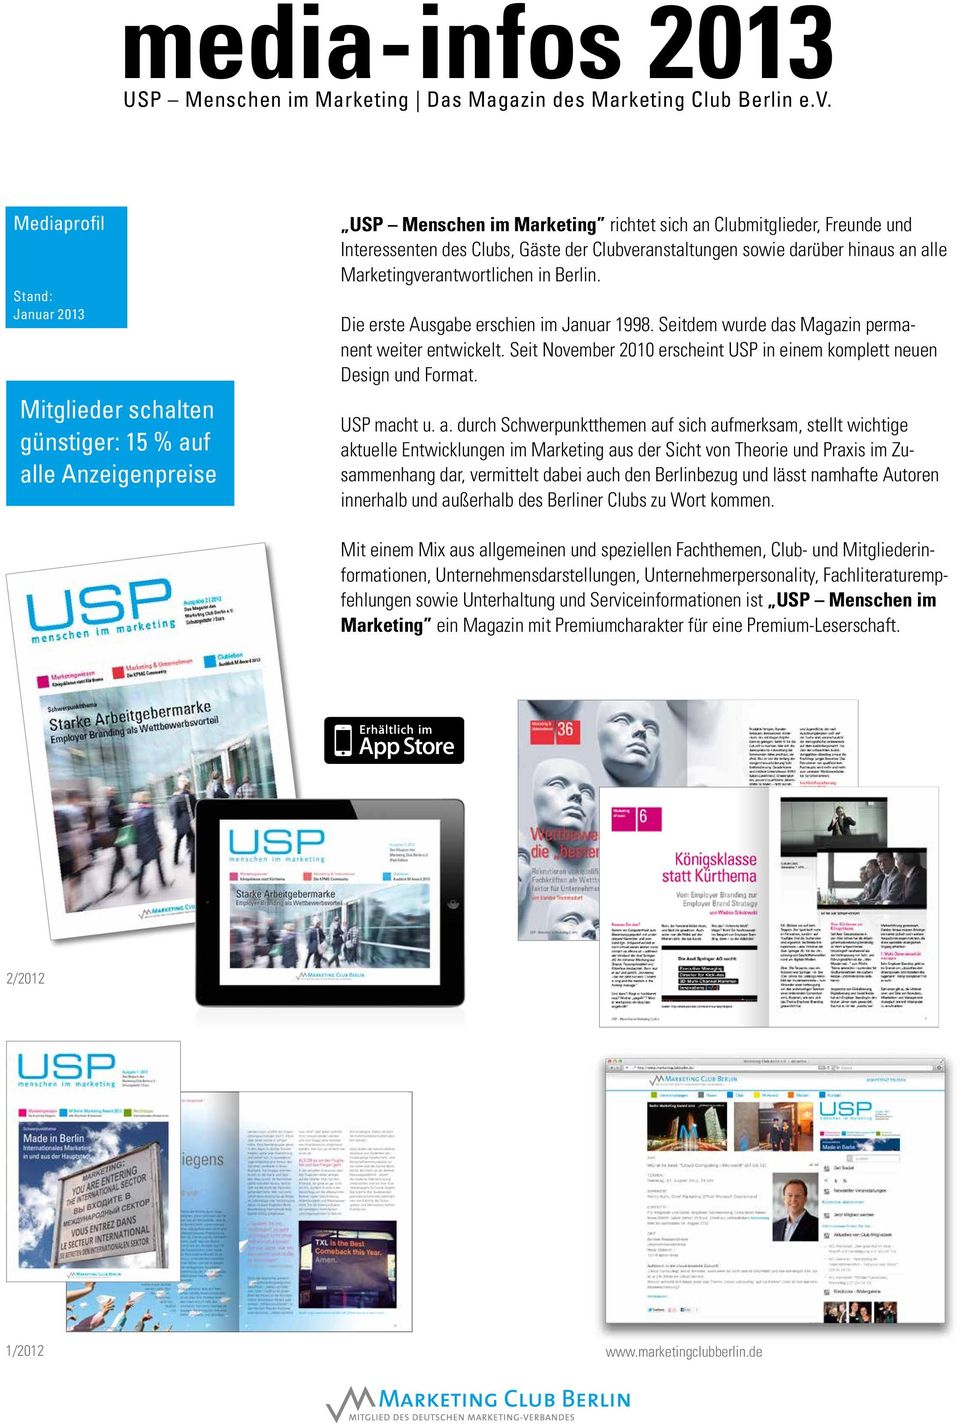 Seit November 2010 erscheint USP in einem komplett neuen Design und Format. USP macht u. a.